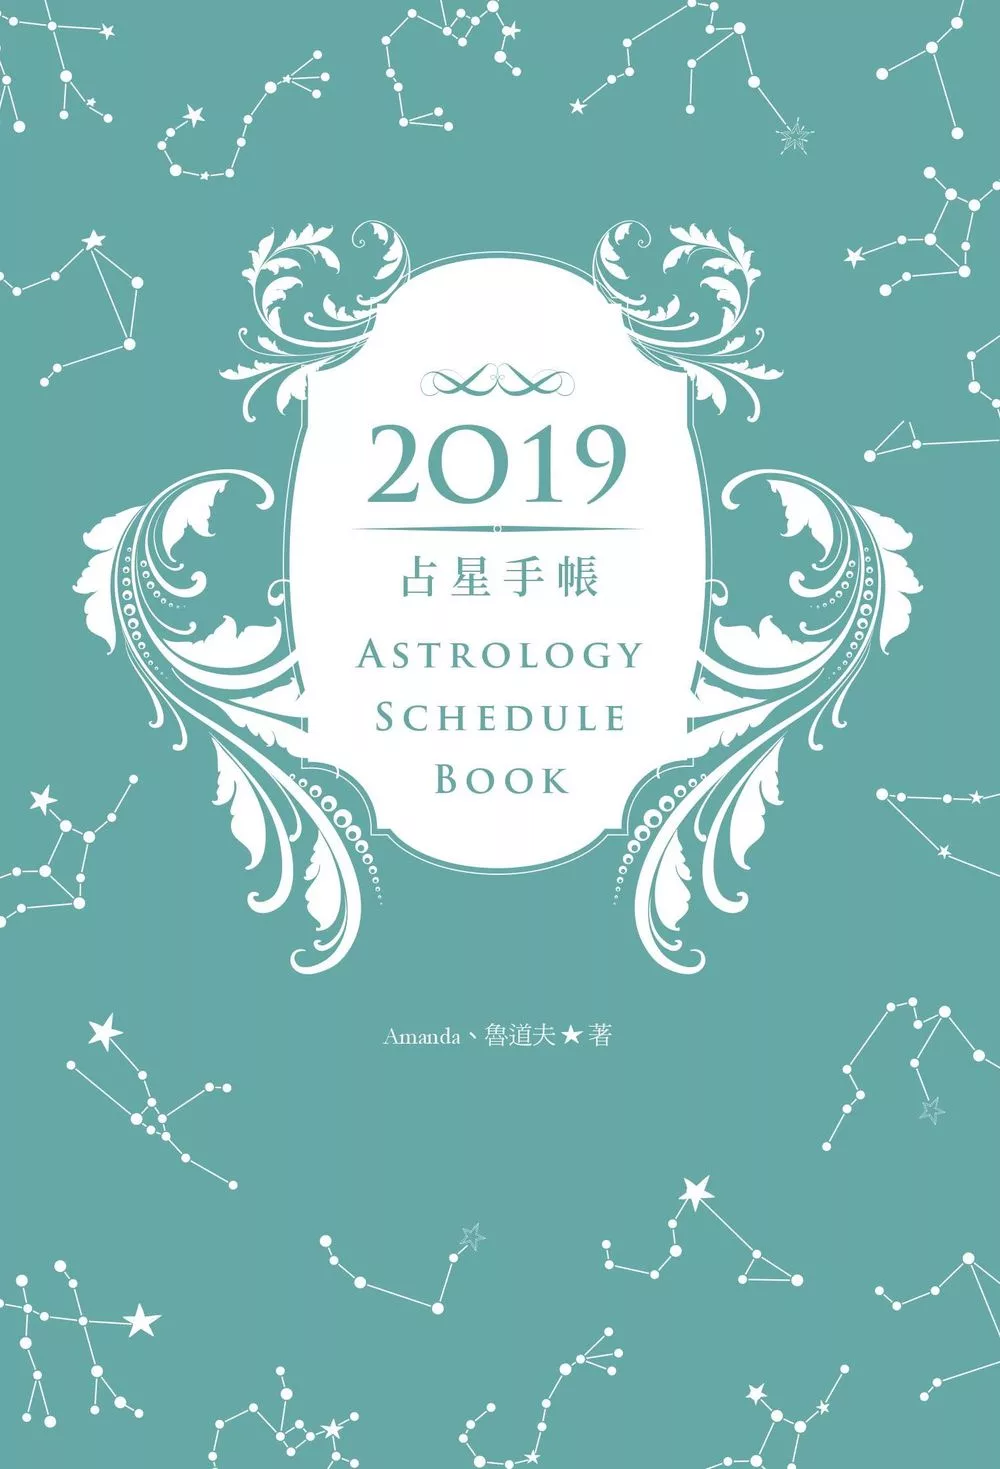 2019占星手帳：掌握年度十二星座解析、每月運勢趨向、每週星運指點、重要星象變化 (電子書)